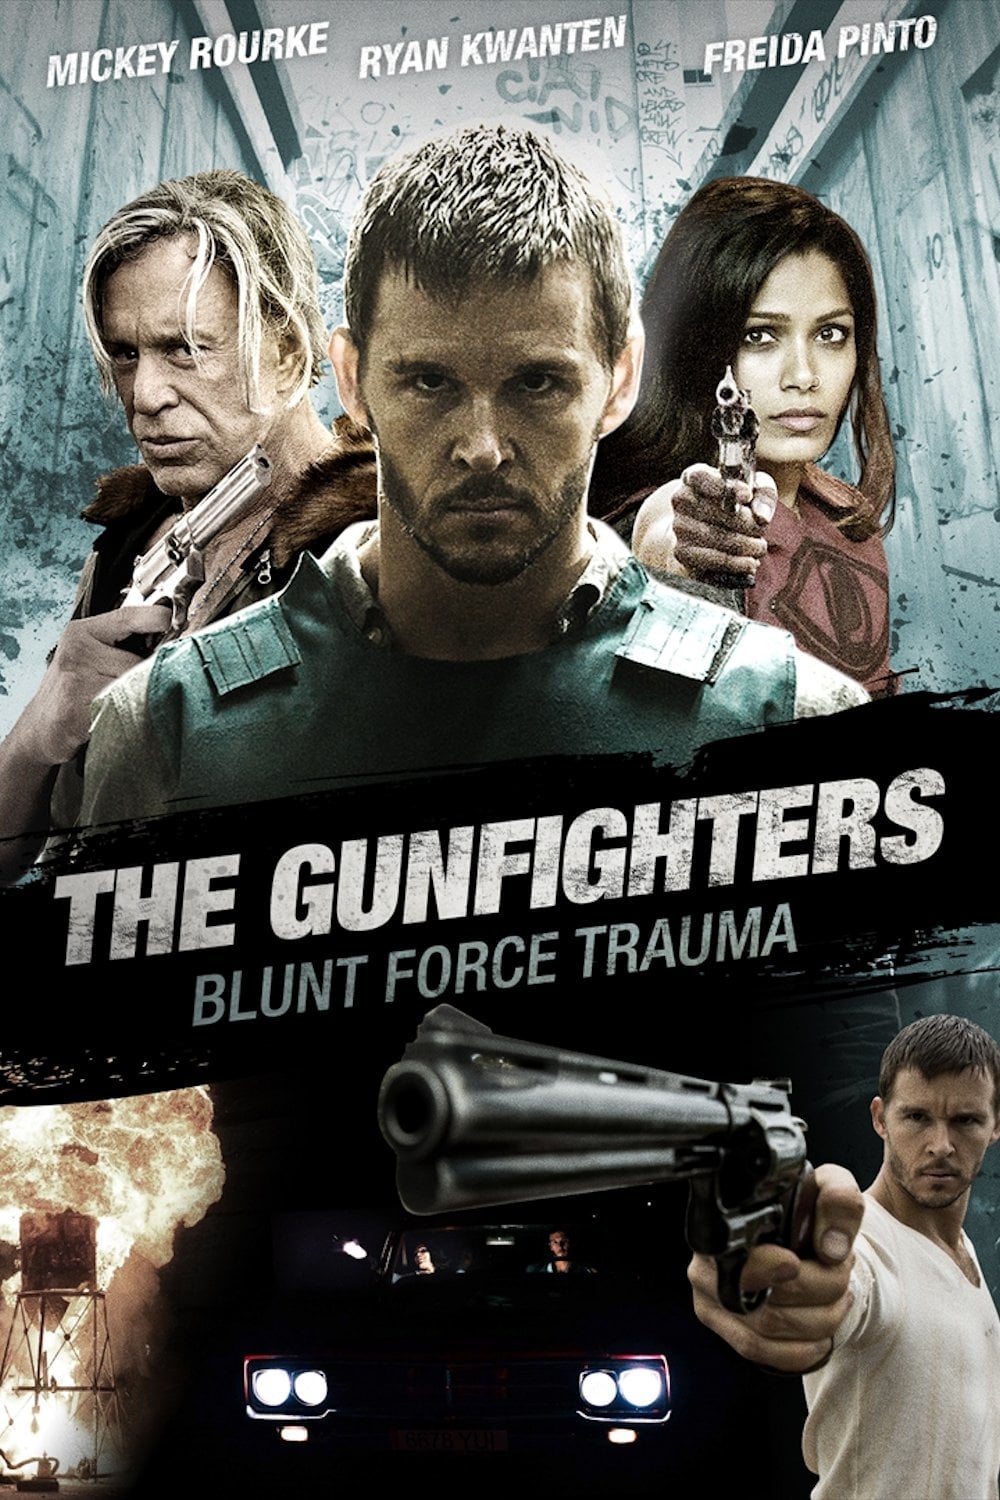 Plakat von "The Gunfighters"